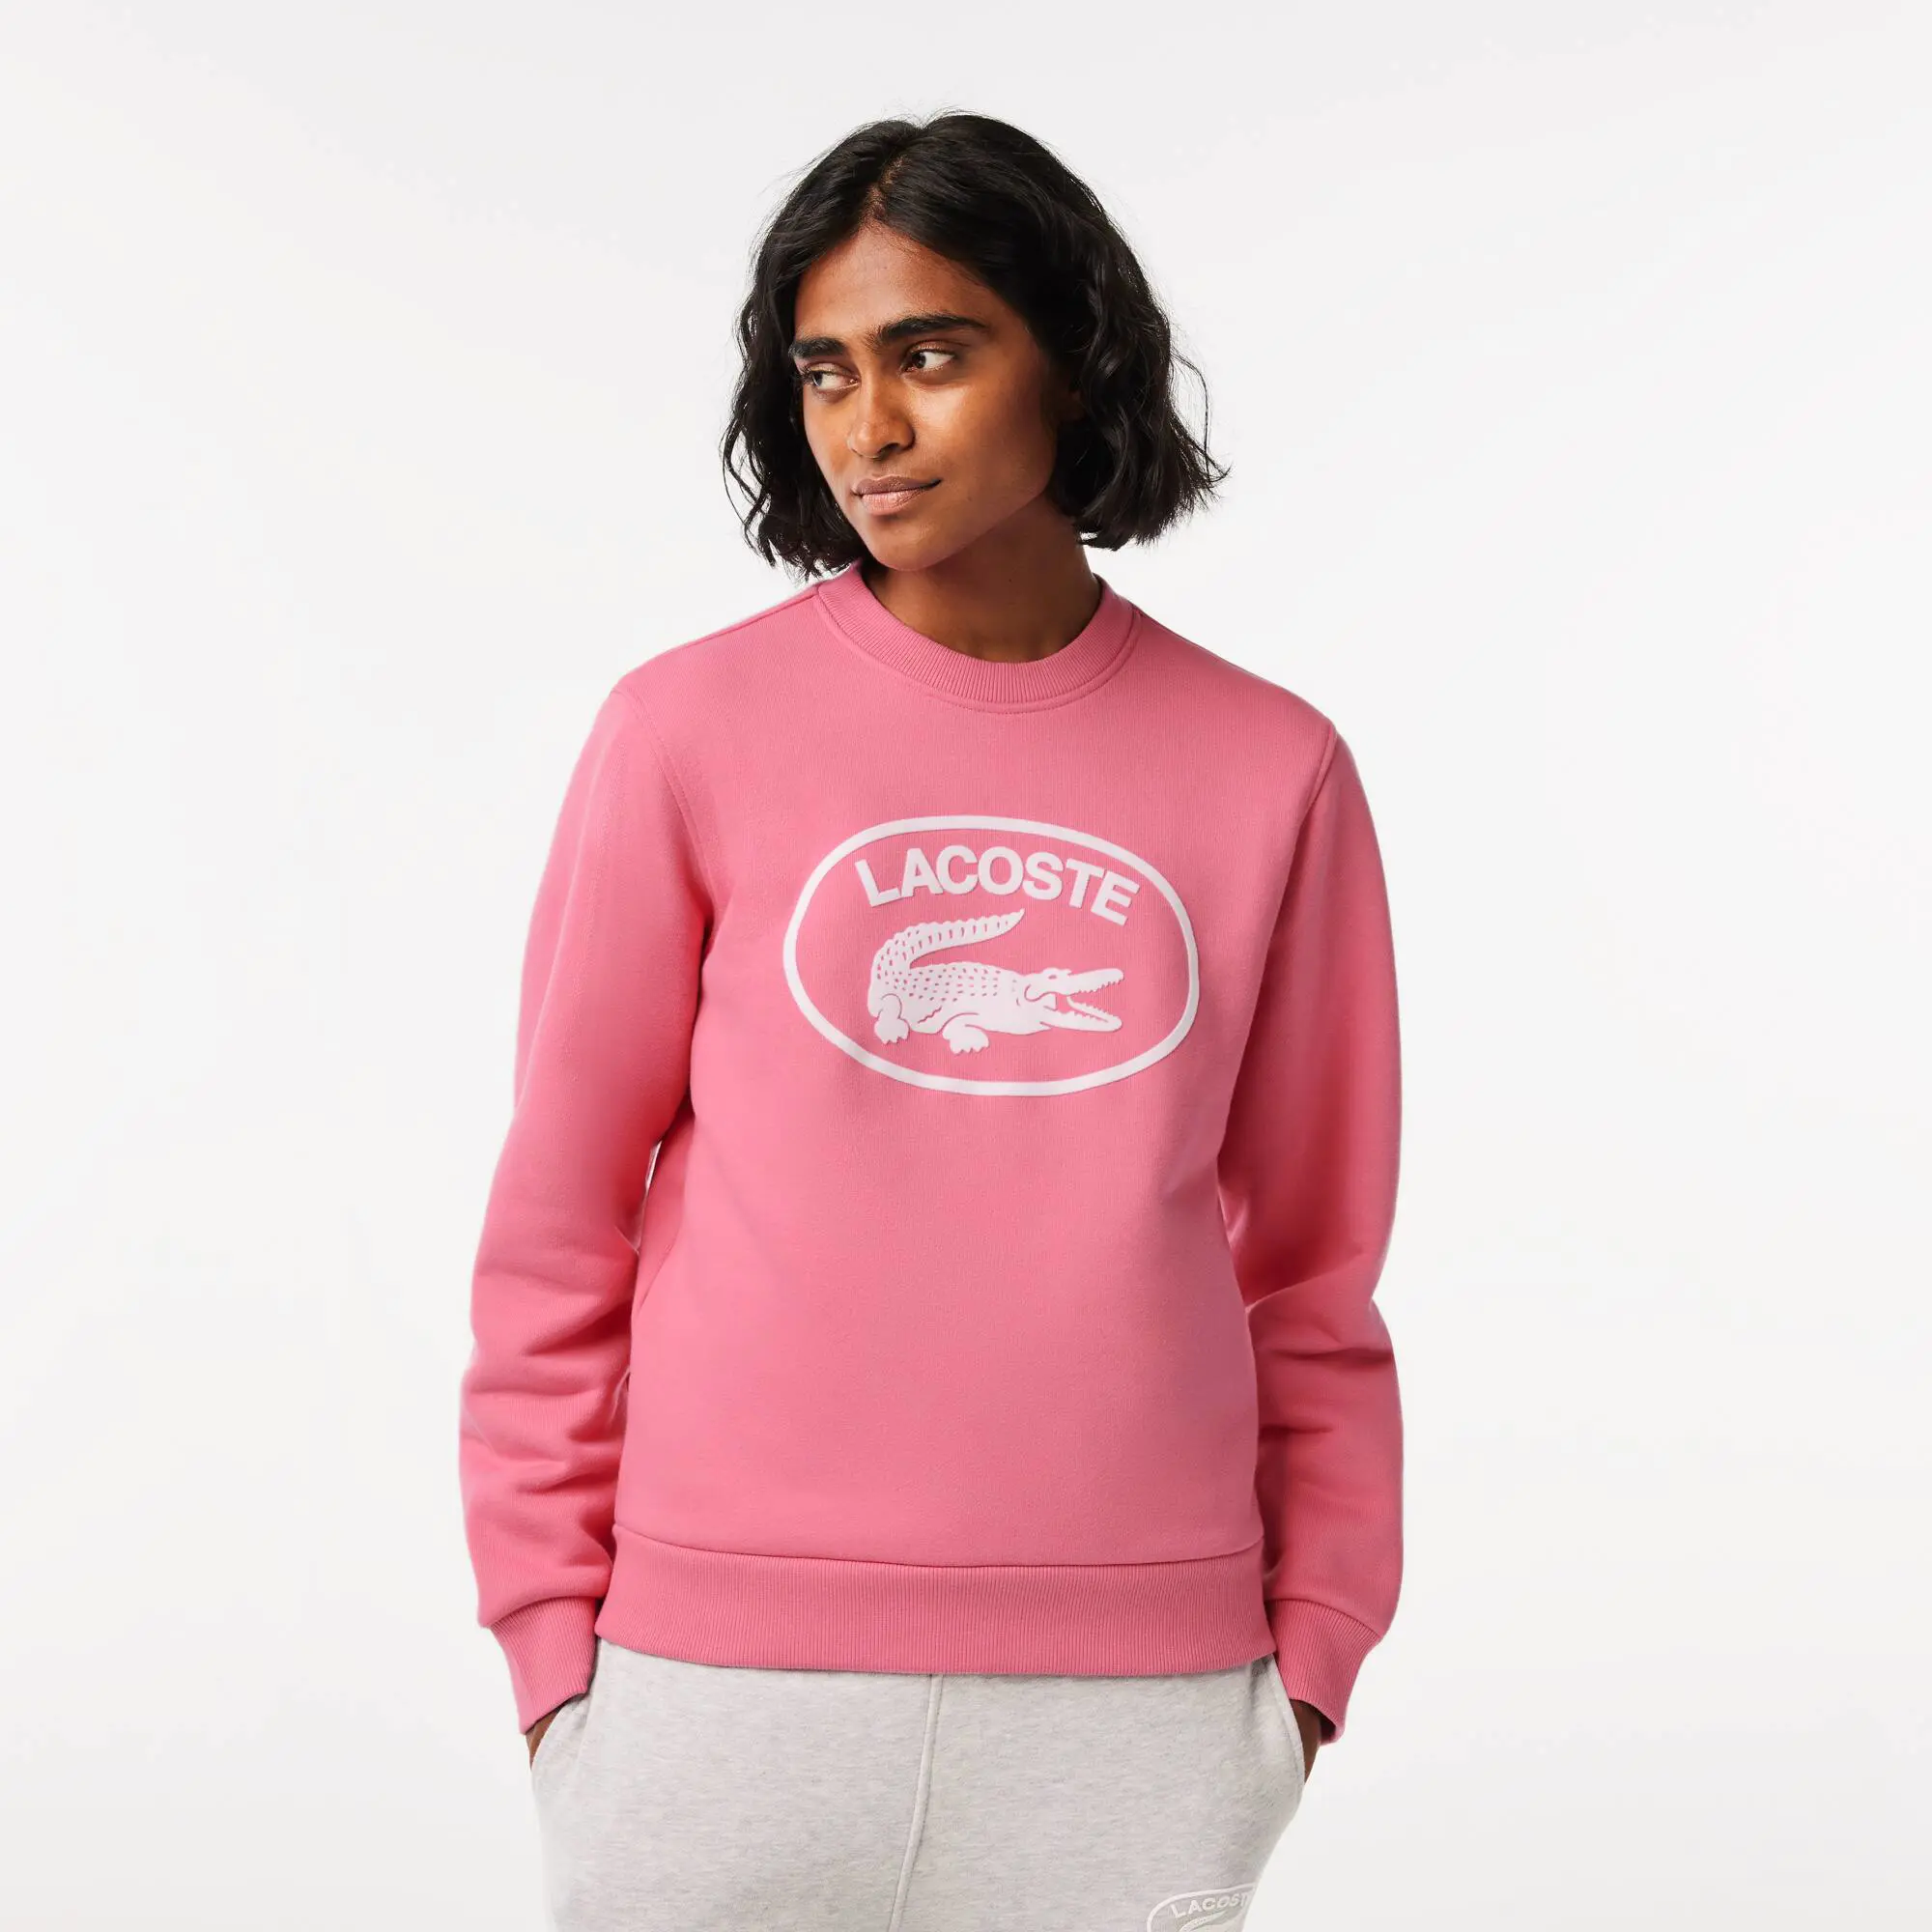 Lacoste Women's Loose Fit Organic Cotton Fleece Sweatshirt. 1